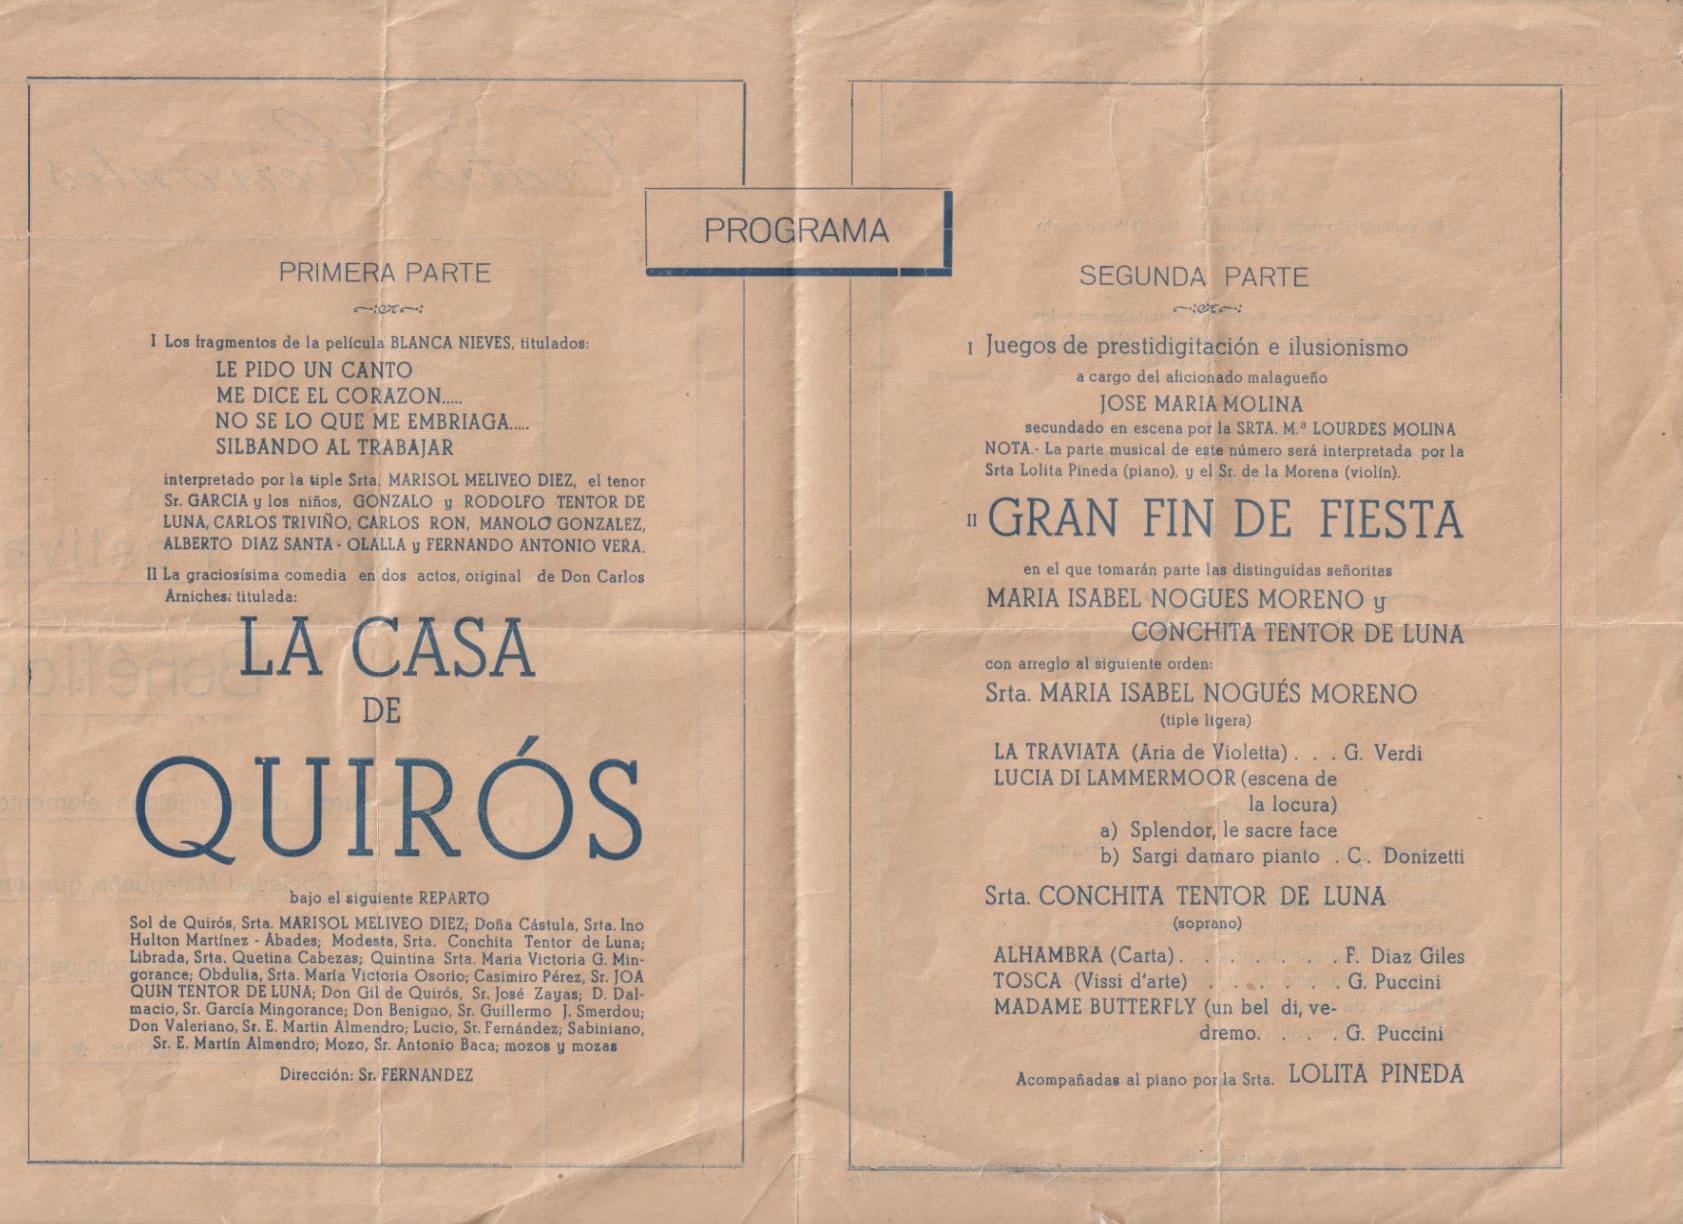 Teatro Cervantes. Málaga. Gran Festival Benéfico. La Comedia en dos actos de C. Arniches: La Casa de Quirós. Málaga 17 Junio 1946